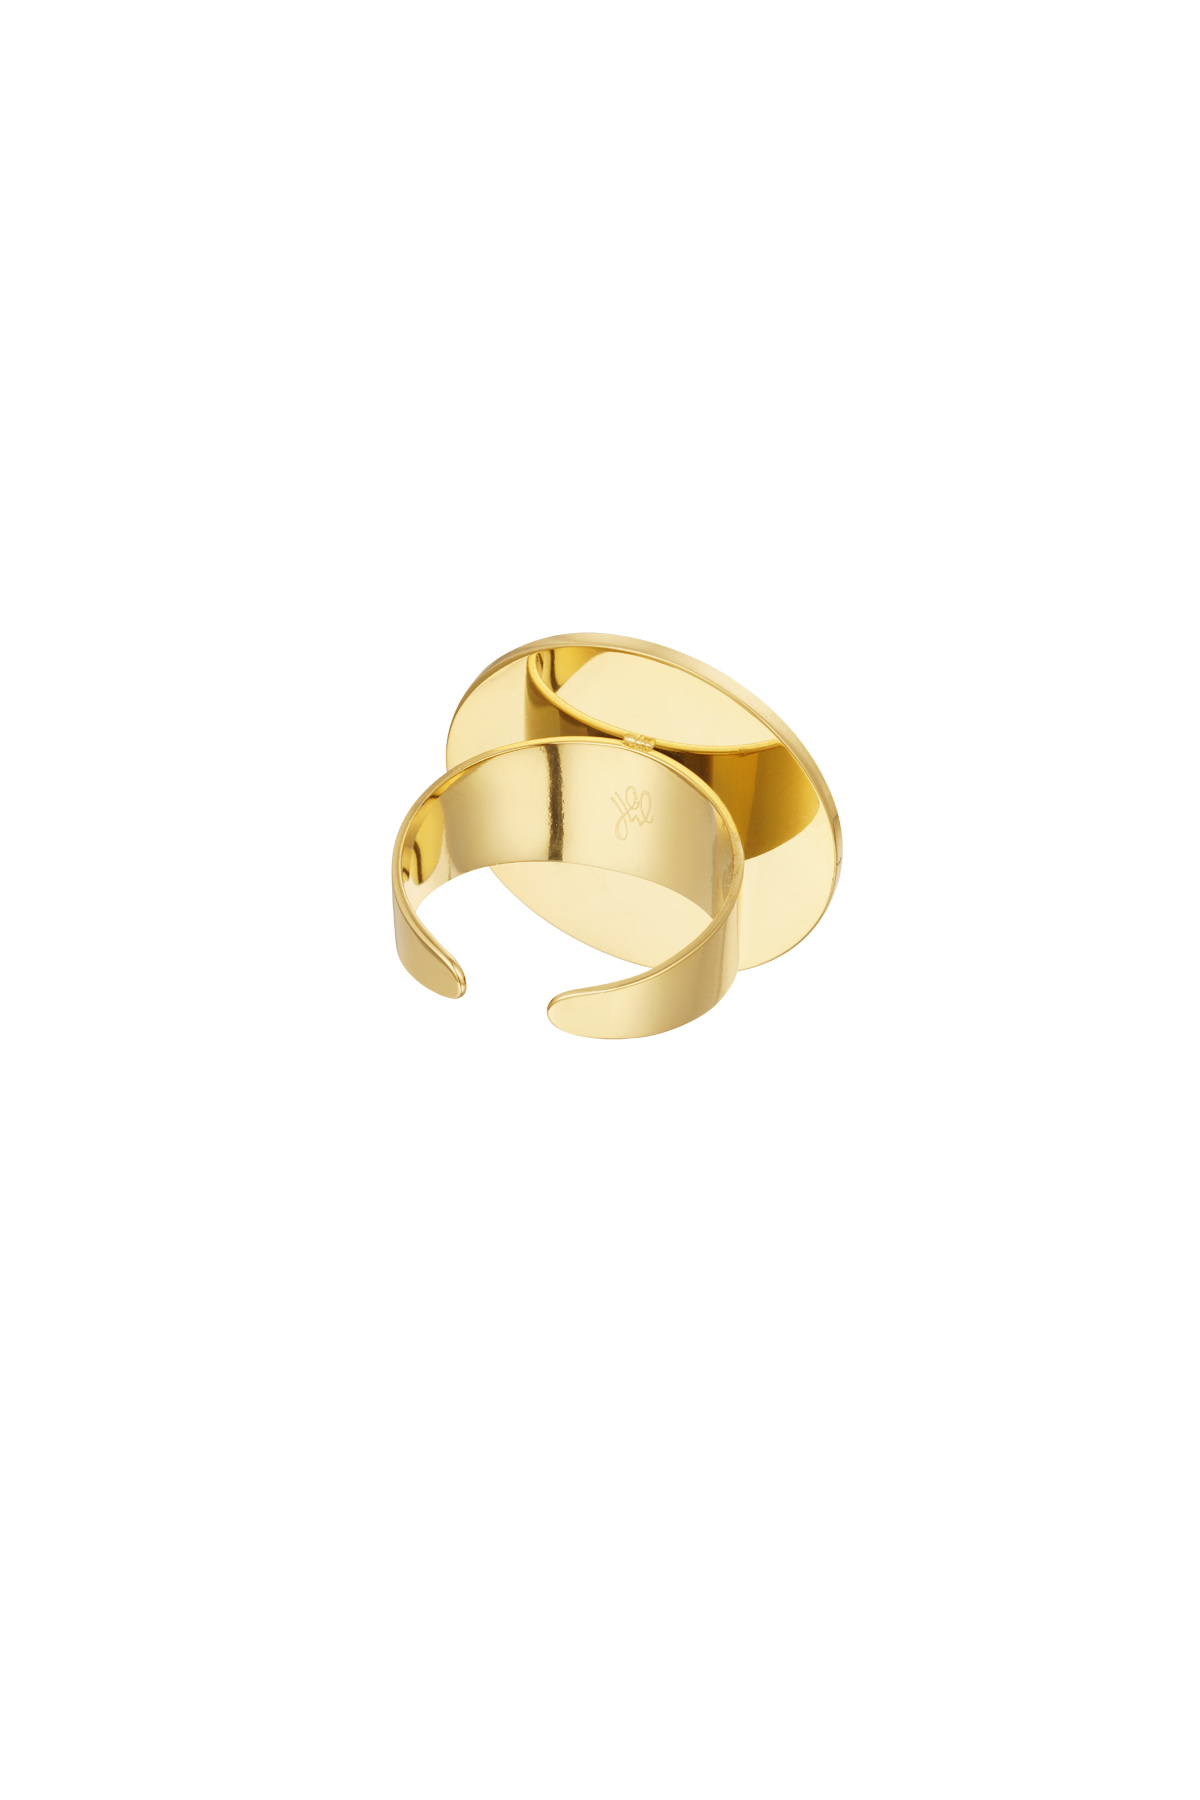 Ring ronde steen - goud/donkergroen h5 Afbeelding4